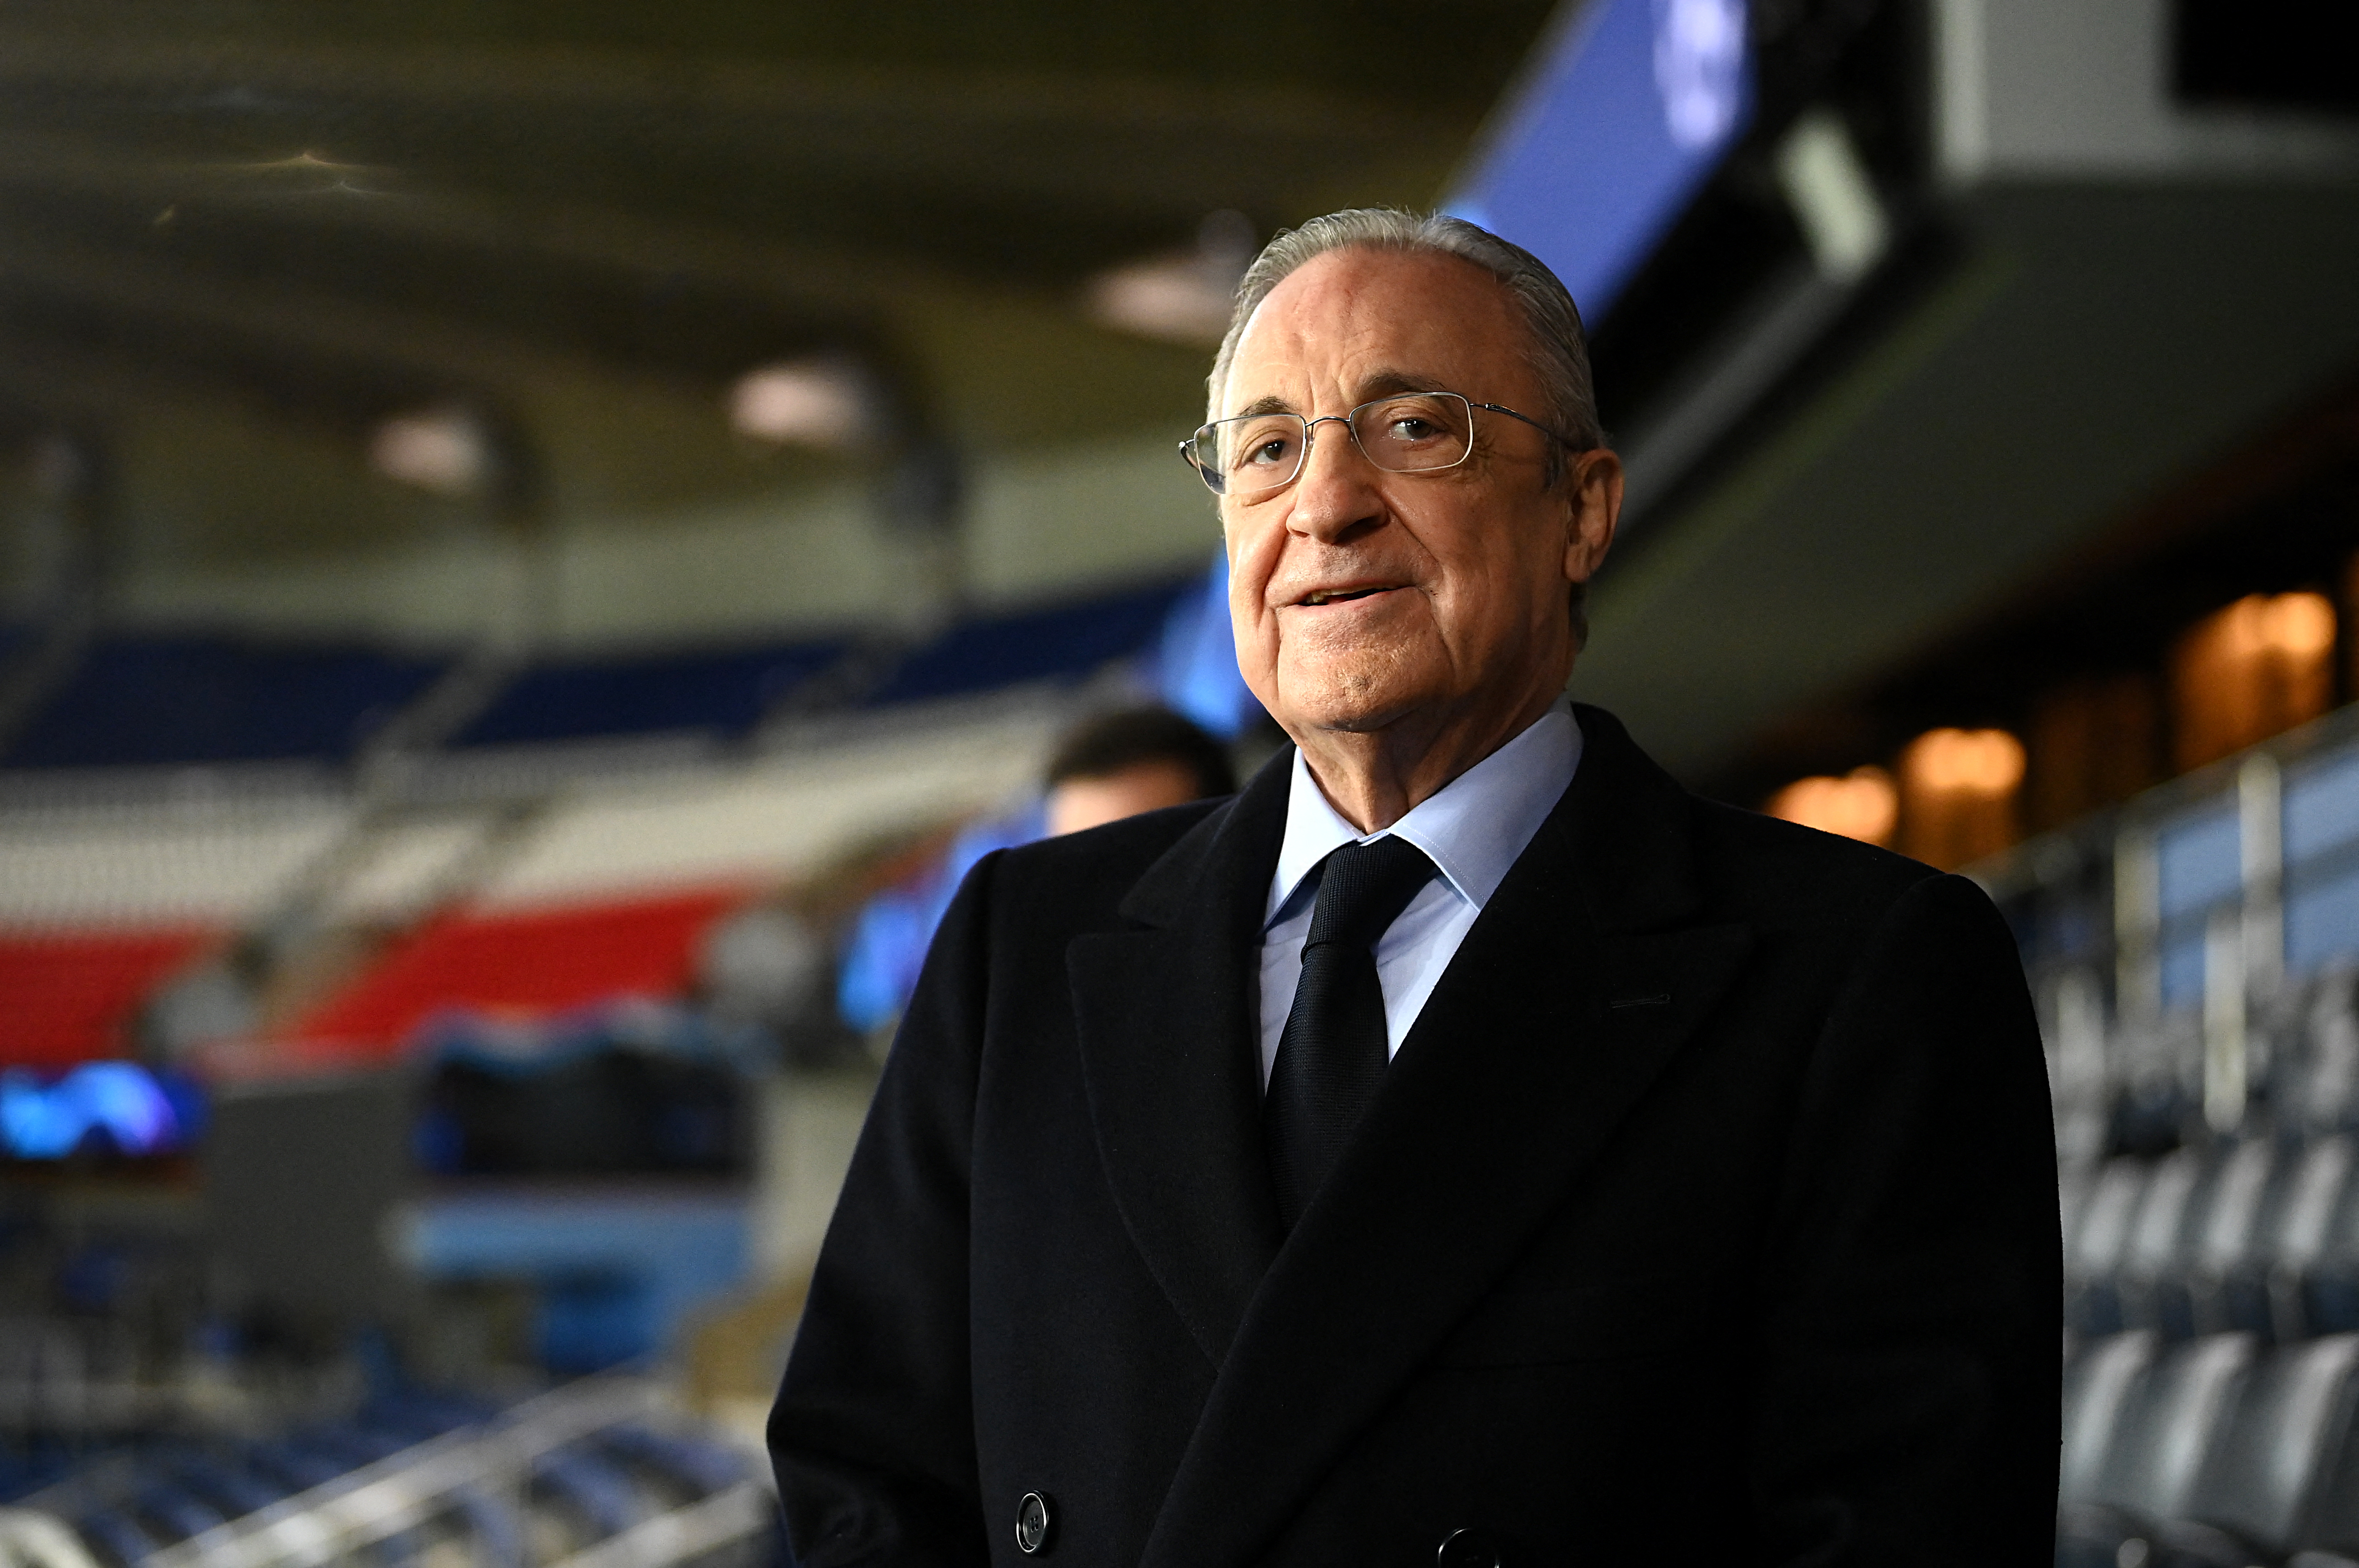 Florentino Pérez, el magnate que llevó al Real Madrid a otra dimensión